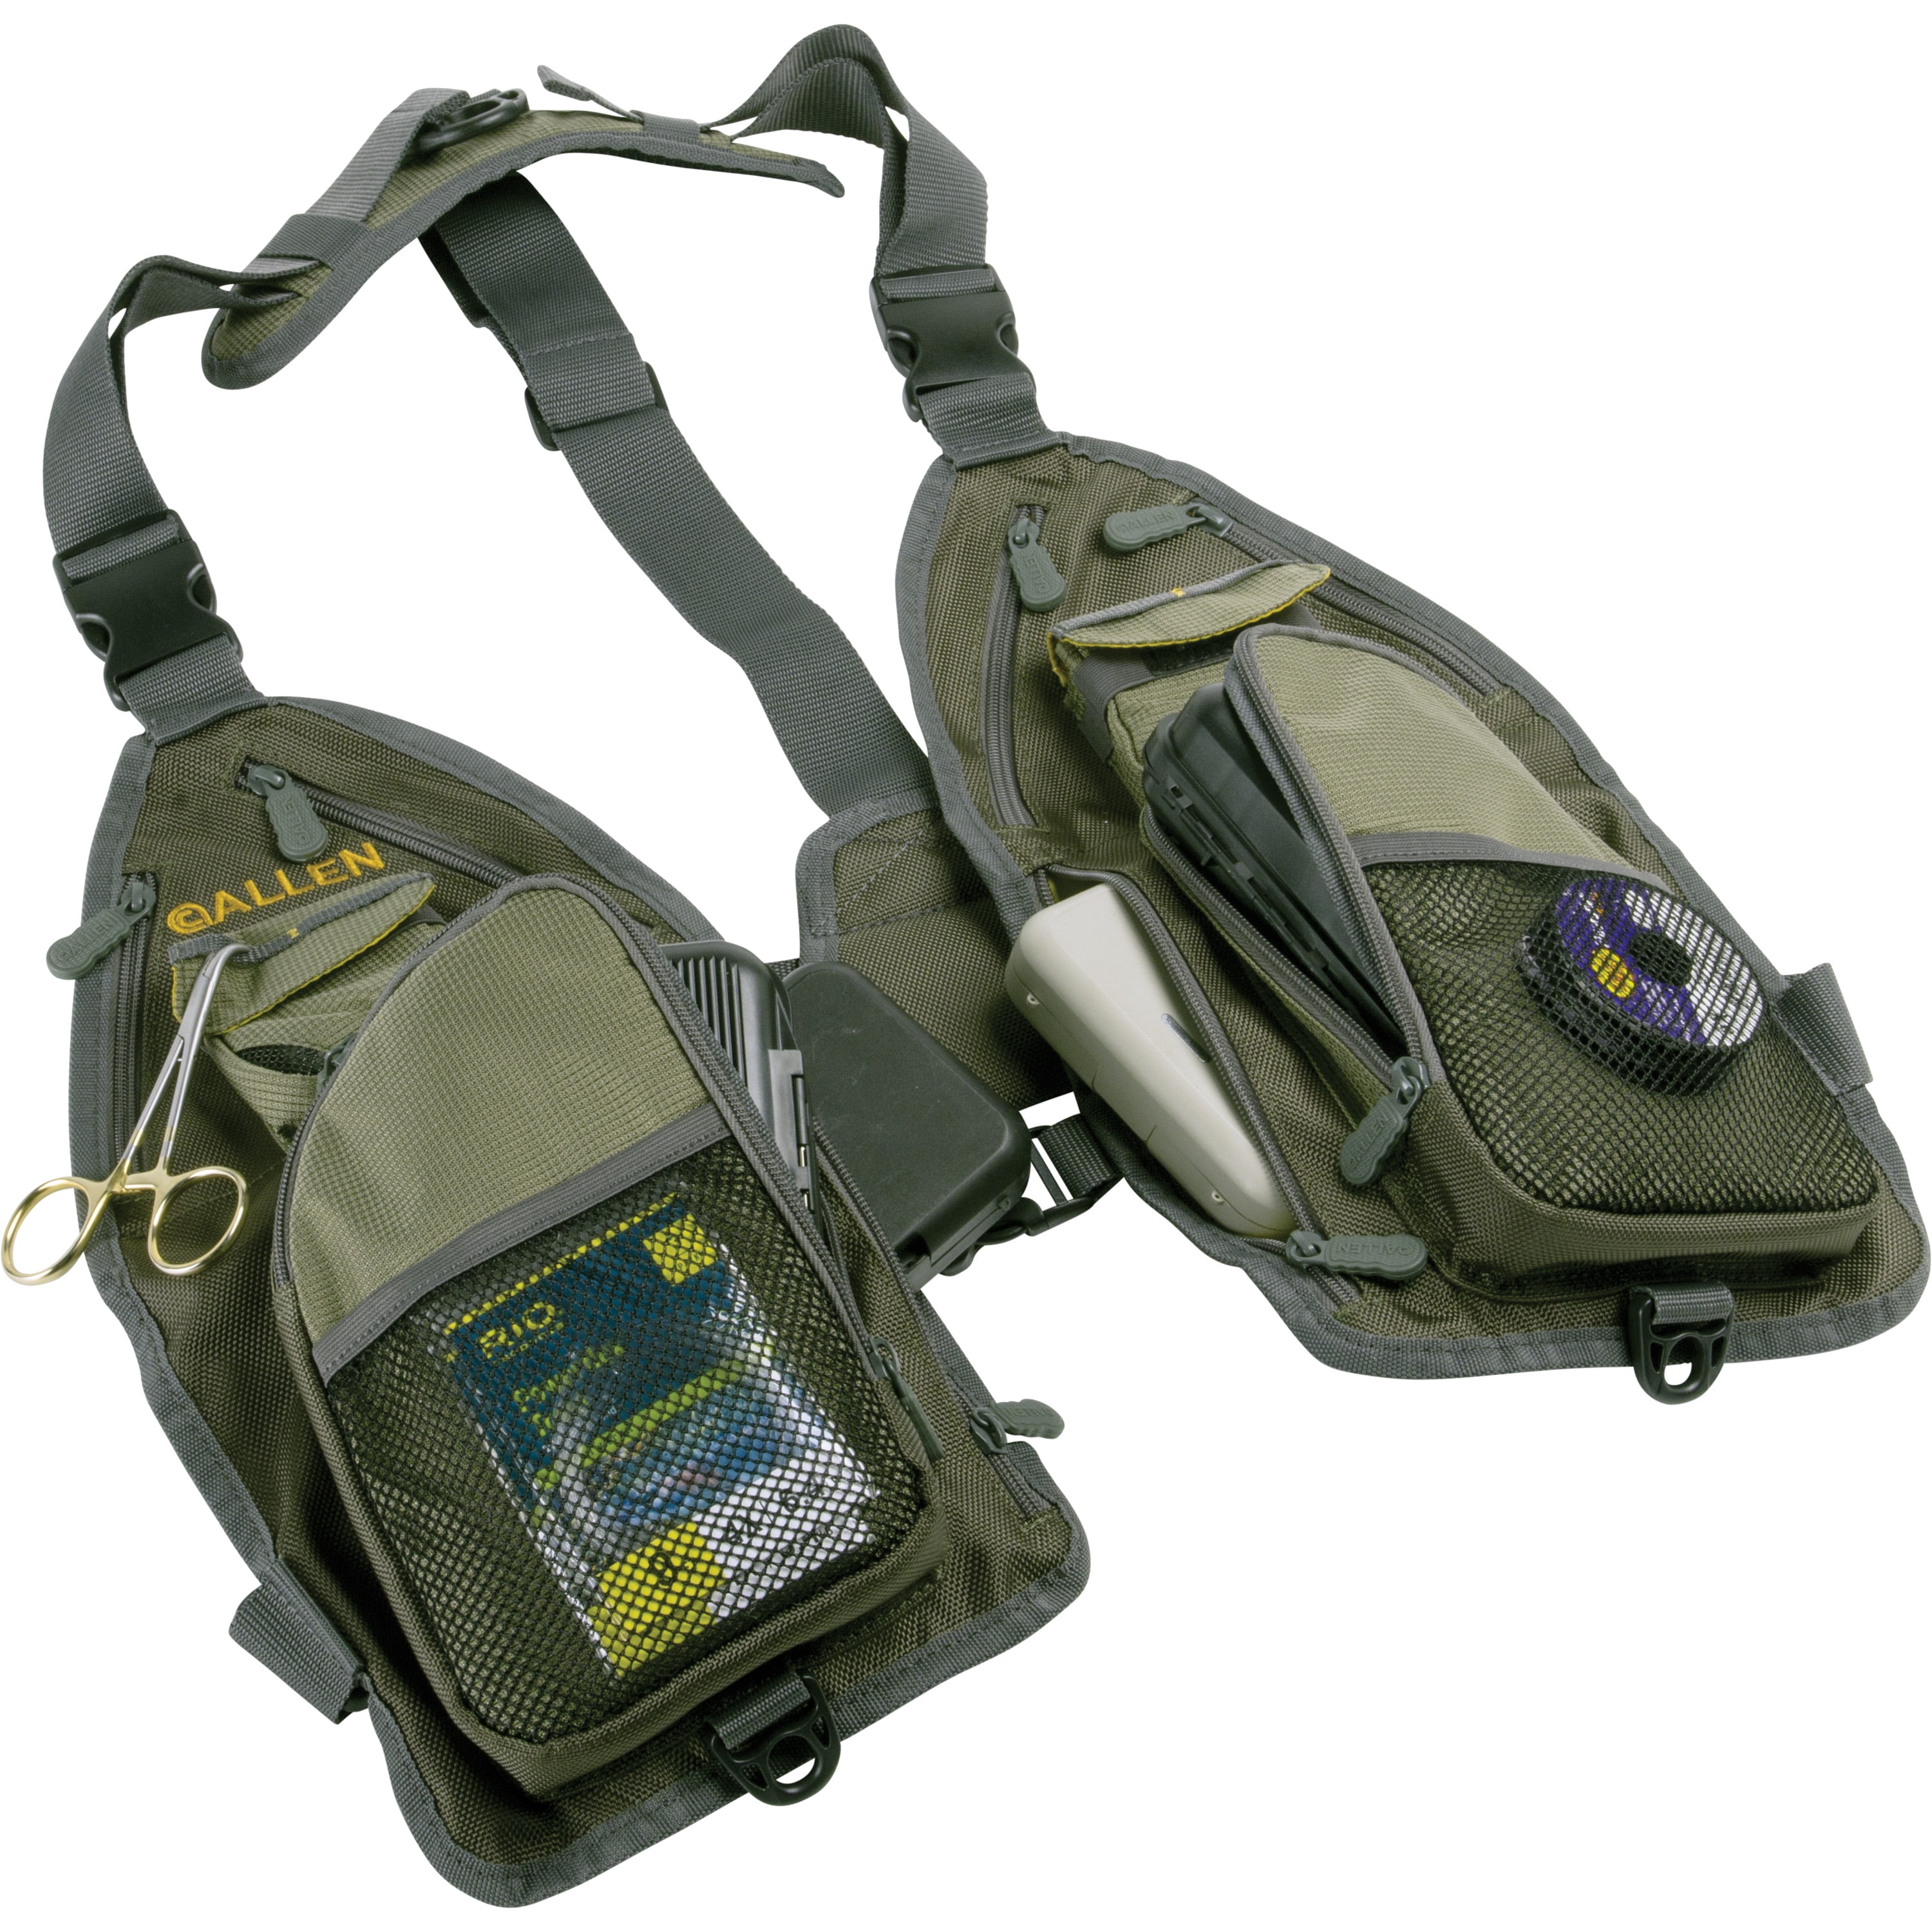 Allen Company Ultra-Light Gallatin Strap Fly Fishing Vest 14 Pockets- Gray